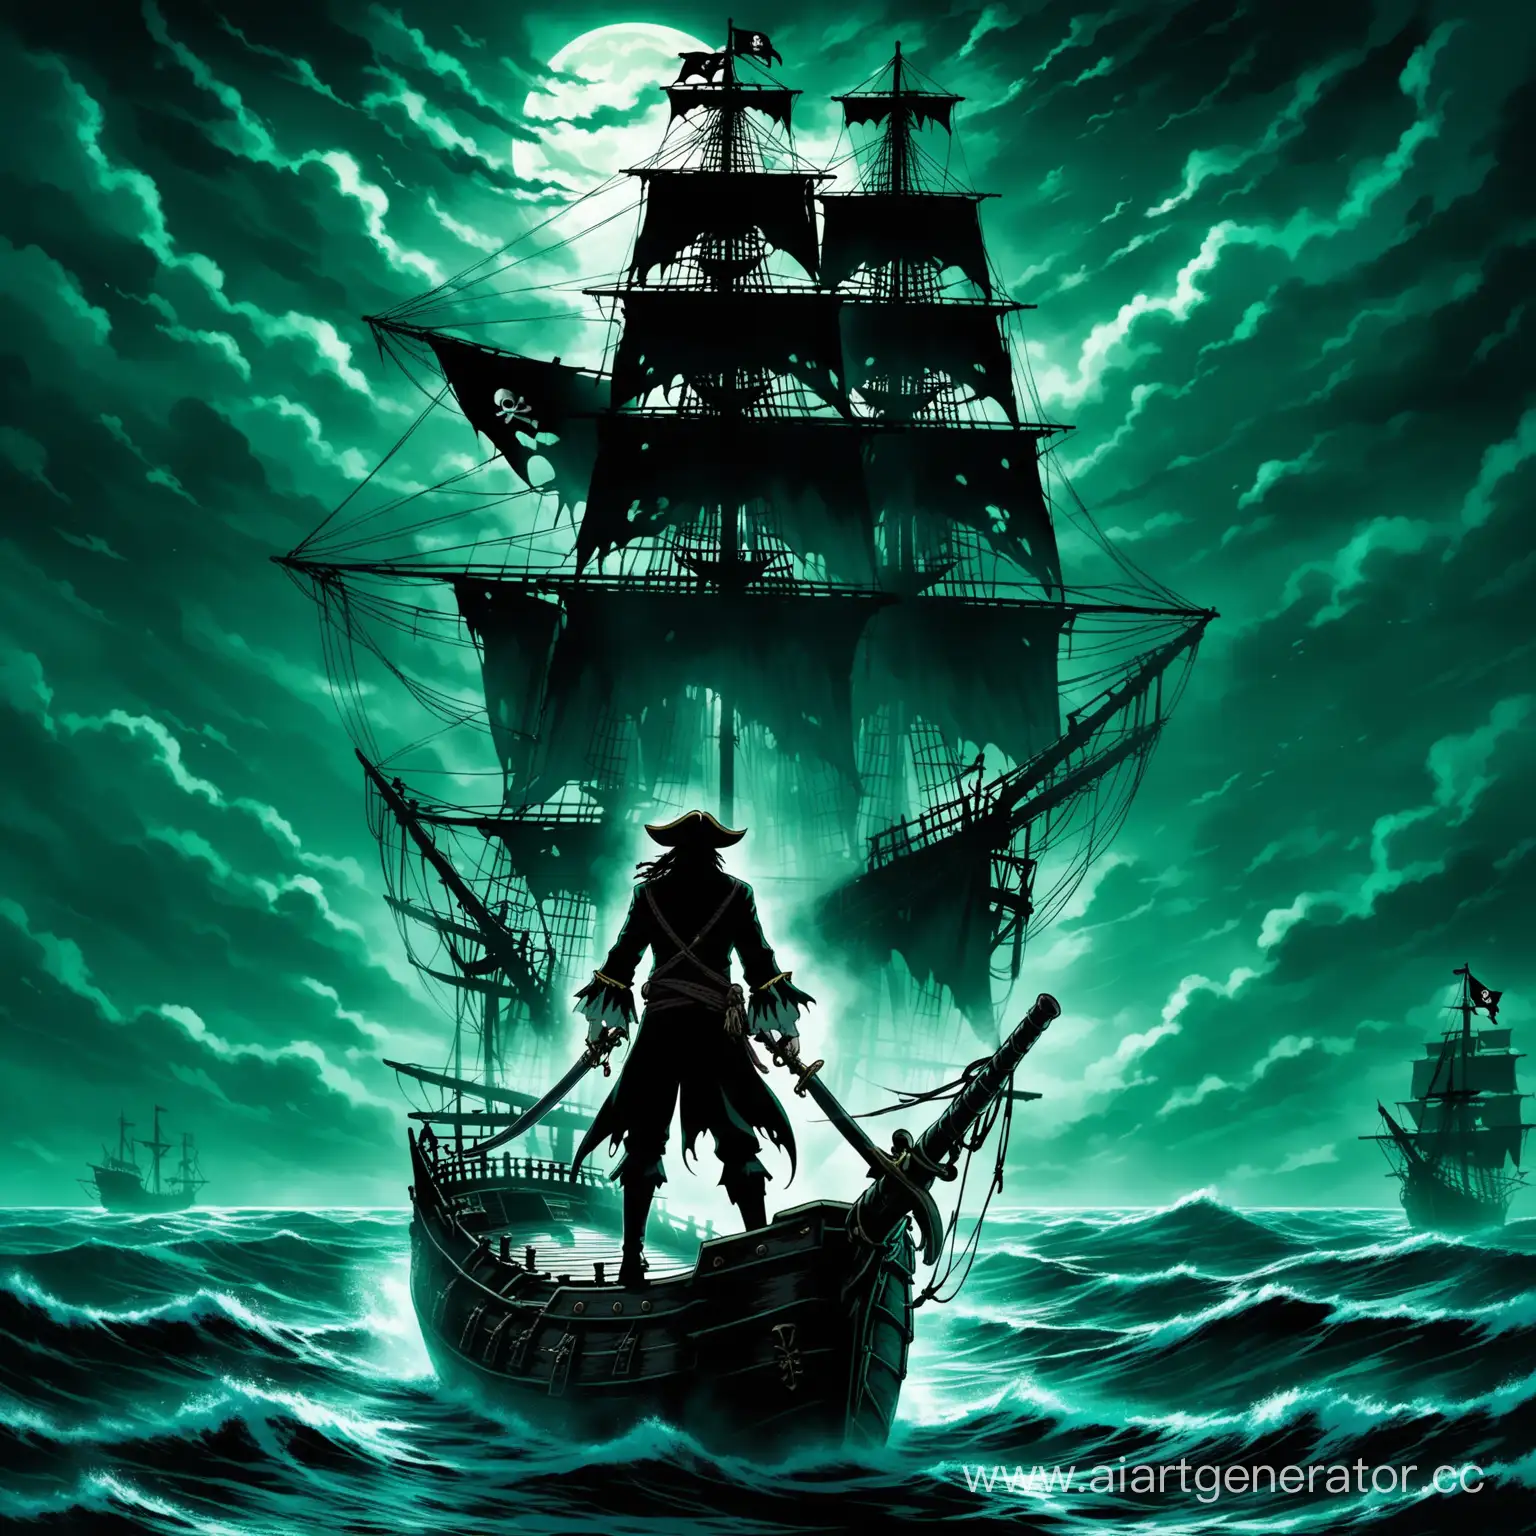 пират с голым торсом держит в руках мечи и стоит на корме летучего голландца, страшная пугающая атмосфера, в стиле анимэ